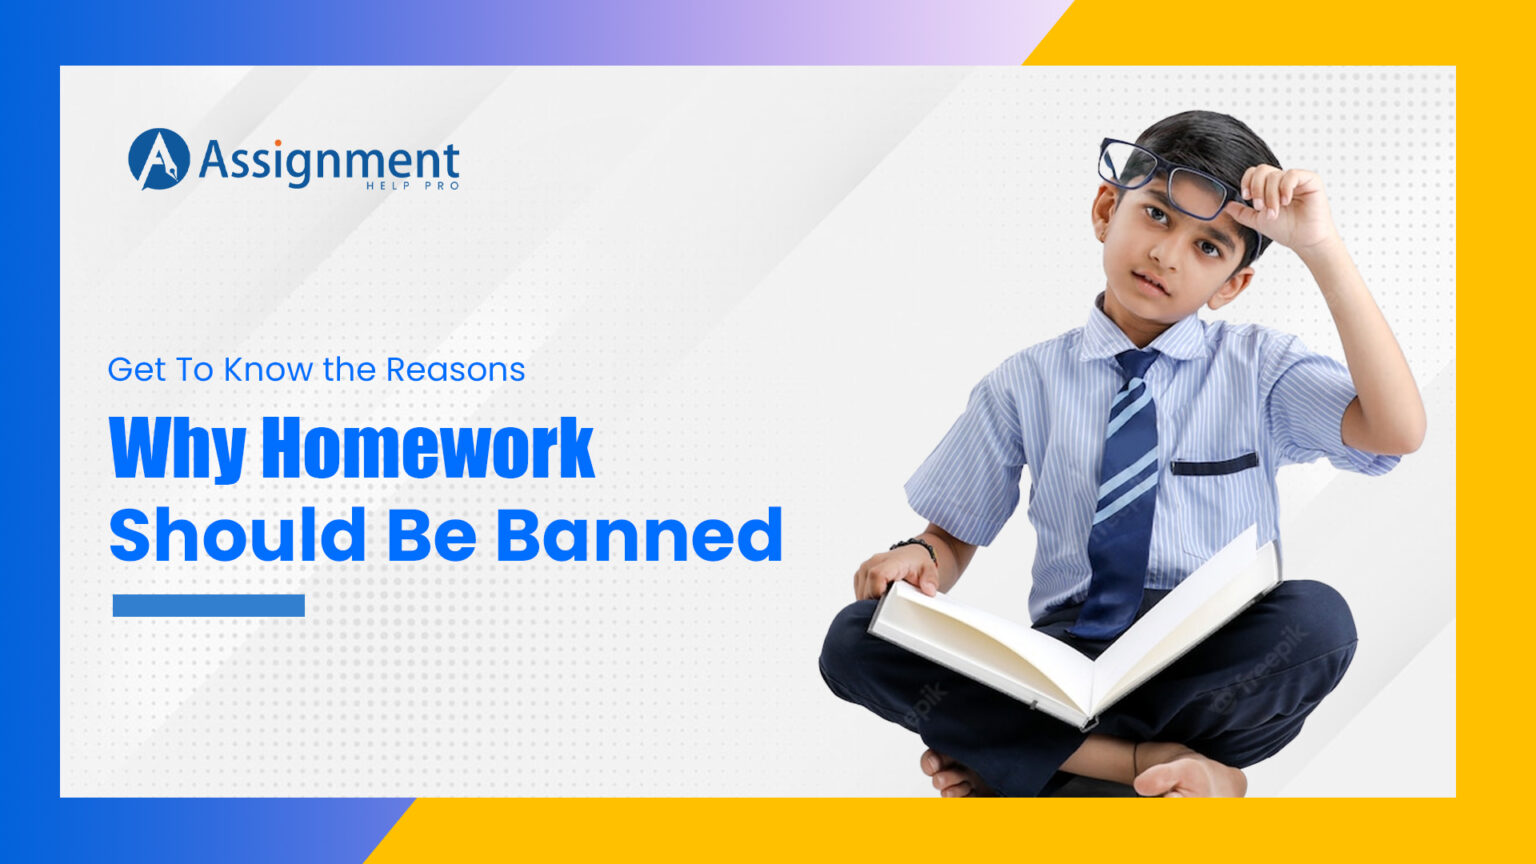 is homework banned in utah